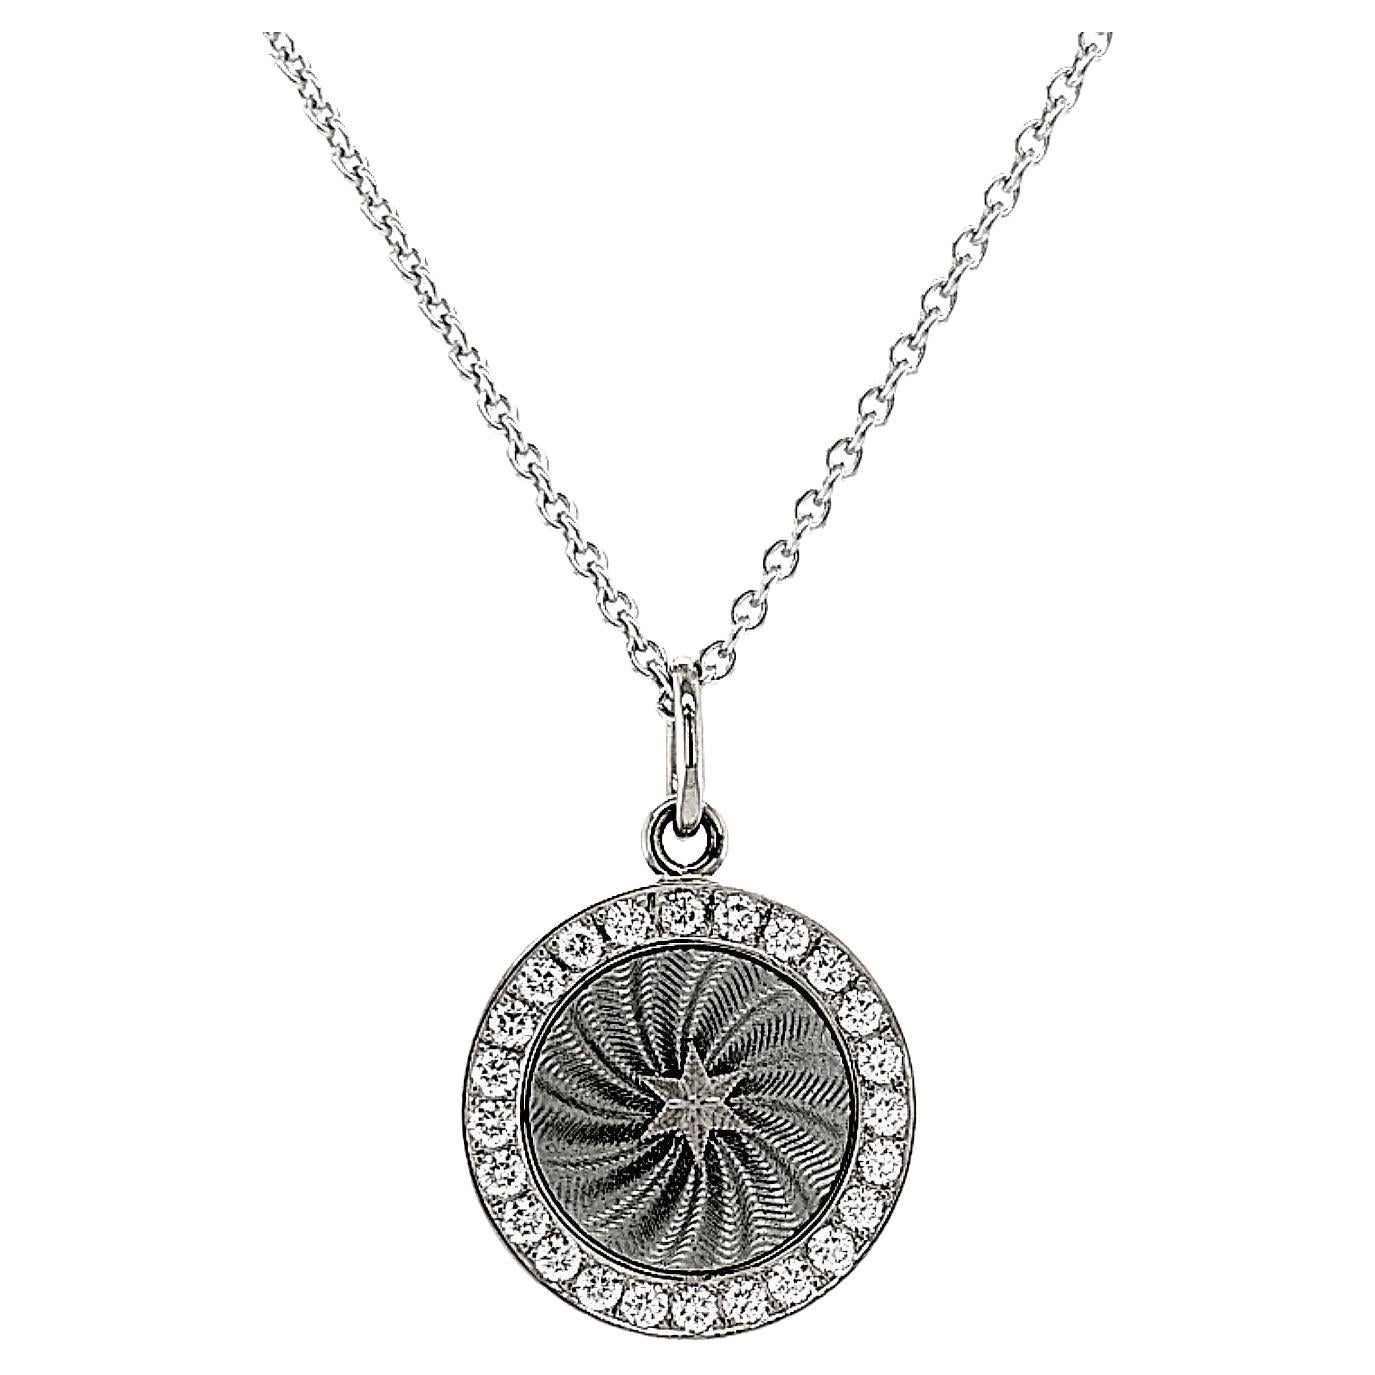 Collier pendentif étoile en forme de disque rond en or blanc 18 carats, argent et émail avec 24 diamants 0,36 carat